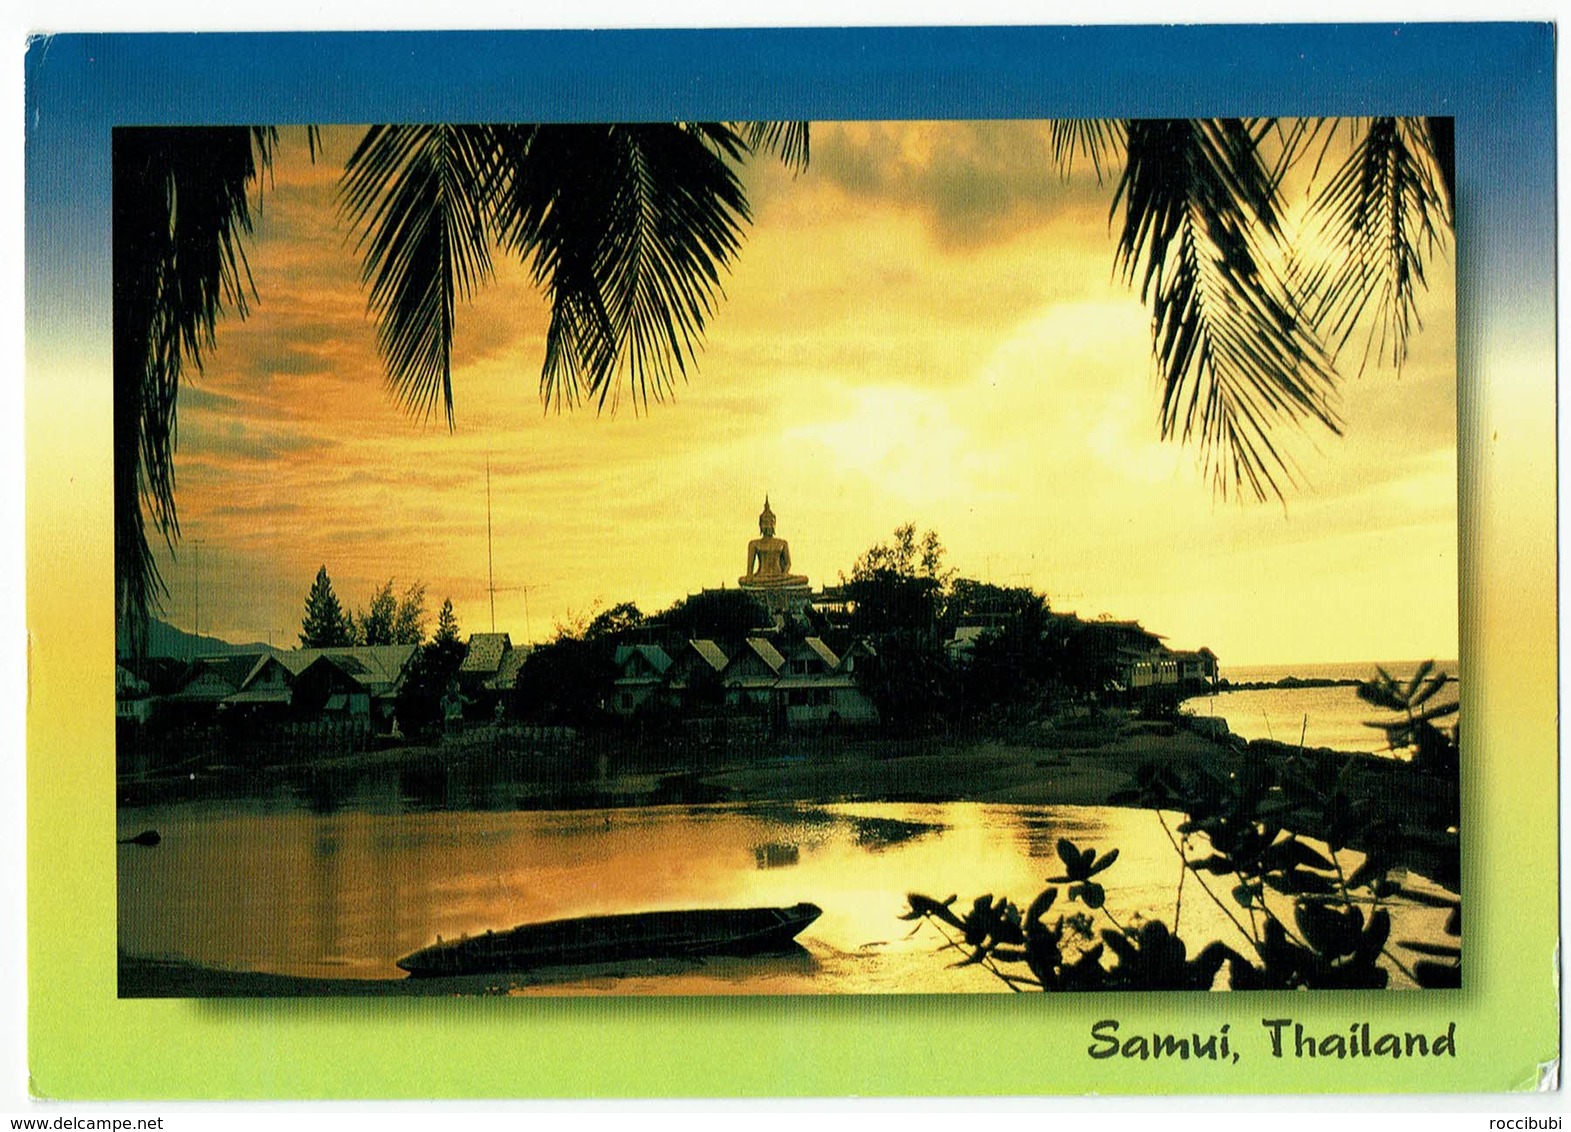 Thailand, Samui - Tailandia